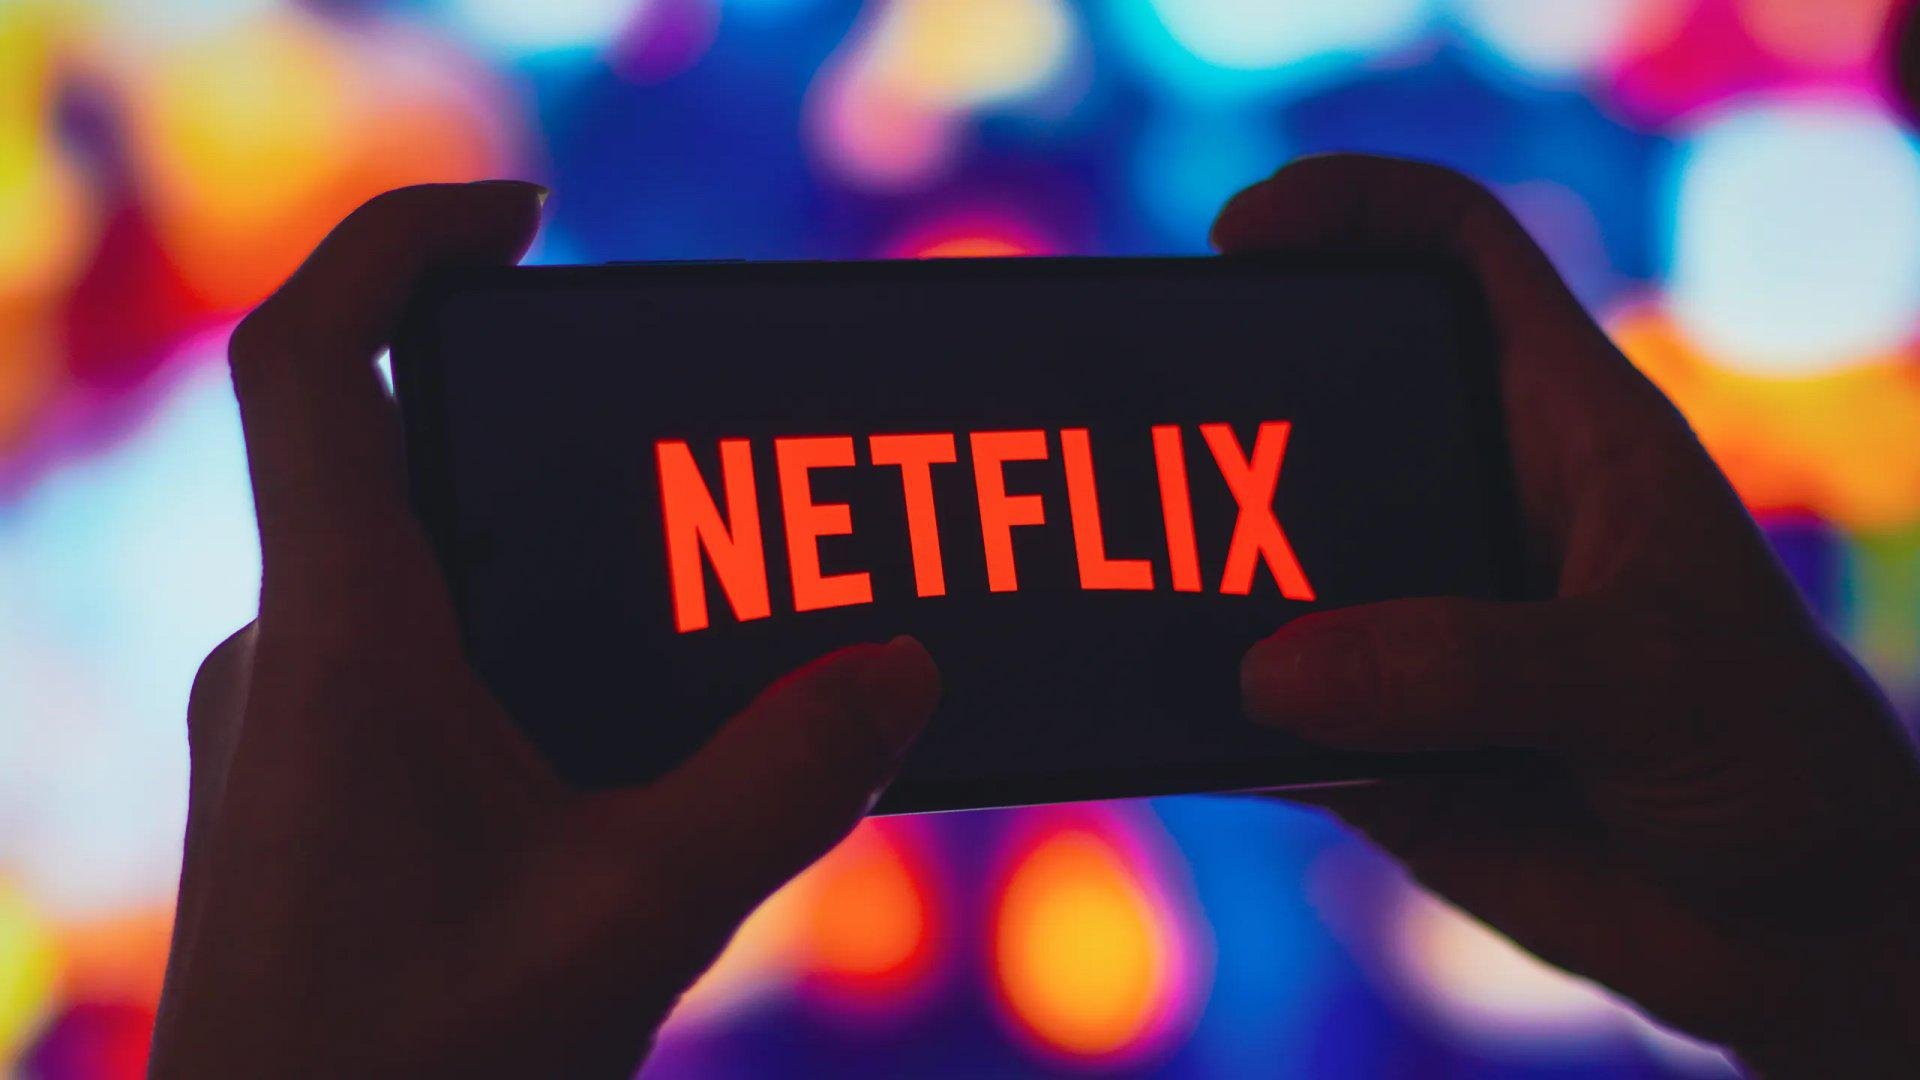 Caso não use uma TV, é possível ainda acessar a Netflix em seus aparelhos.